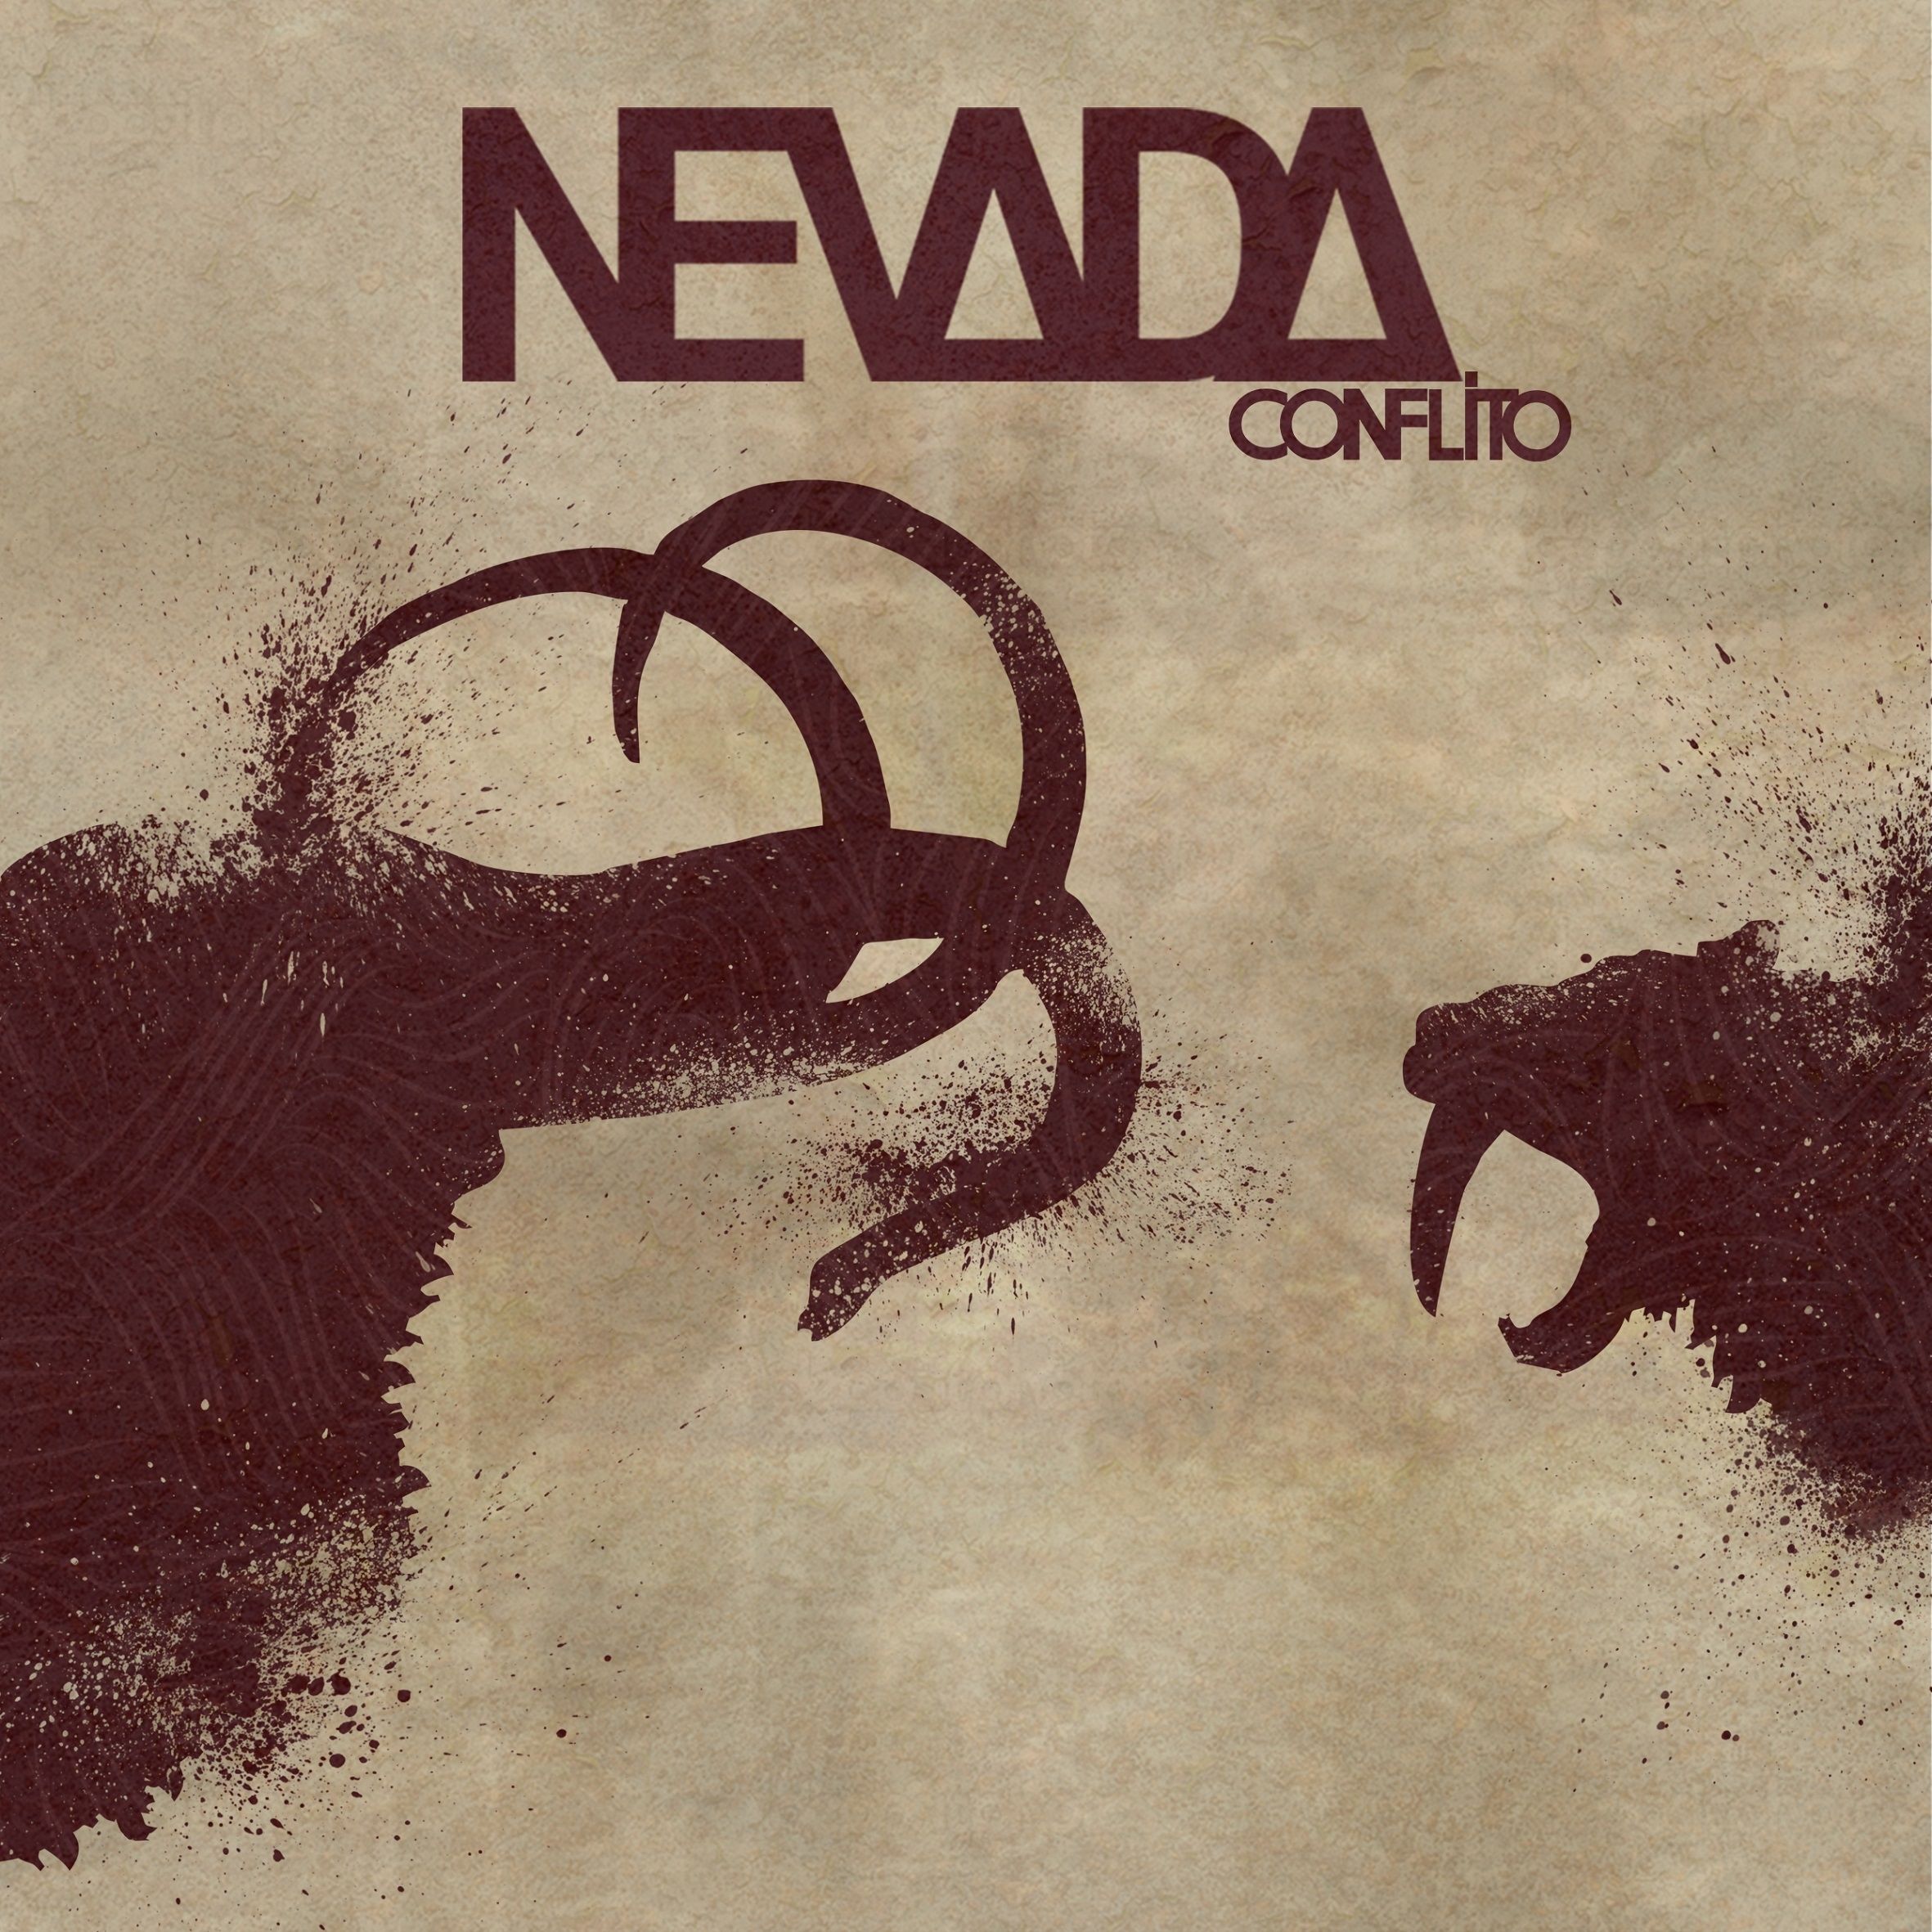 Imagem do álbum Conflito do(a) artista Nevada